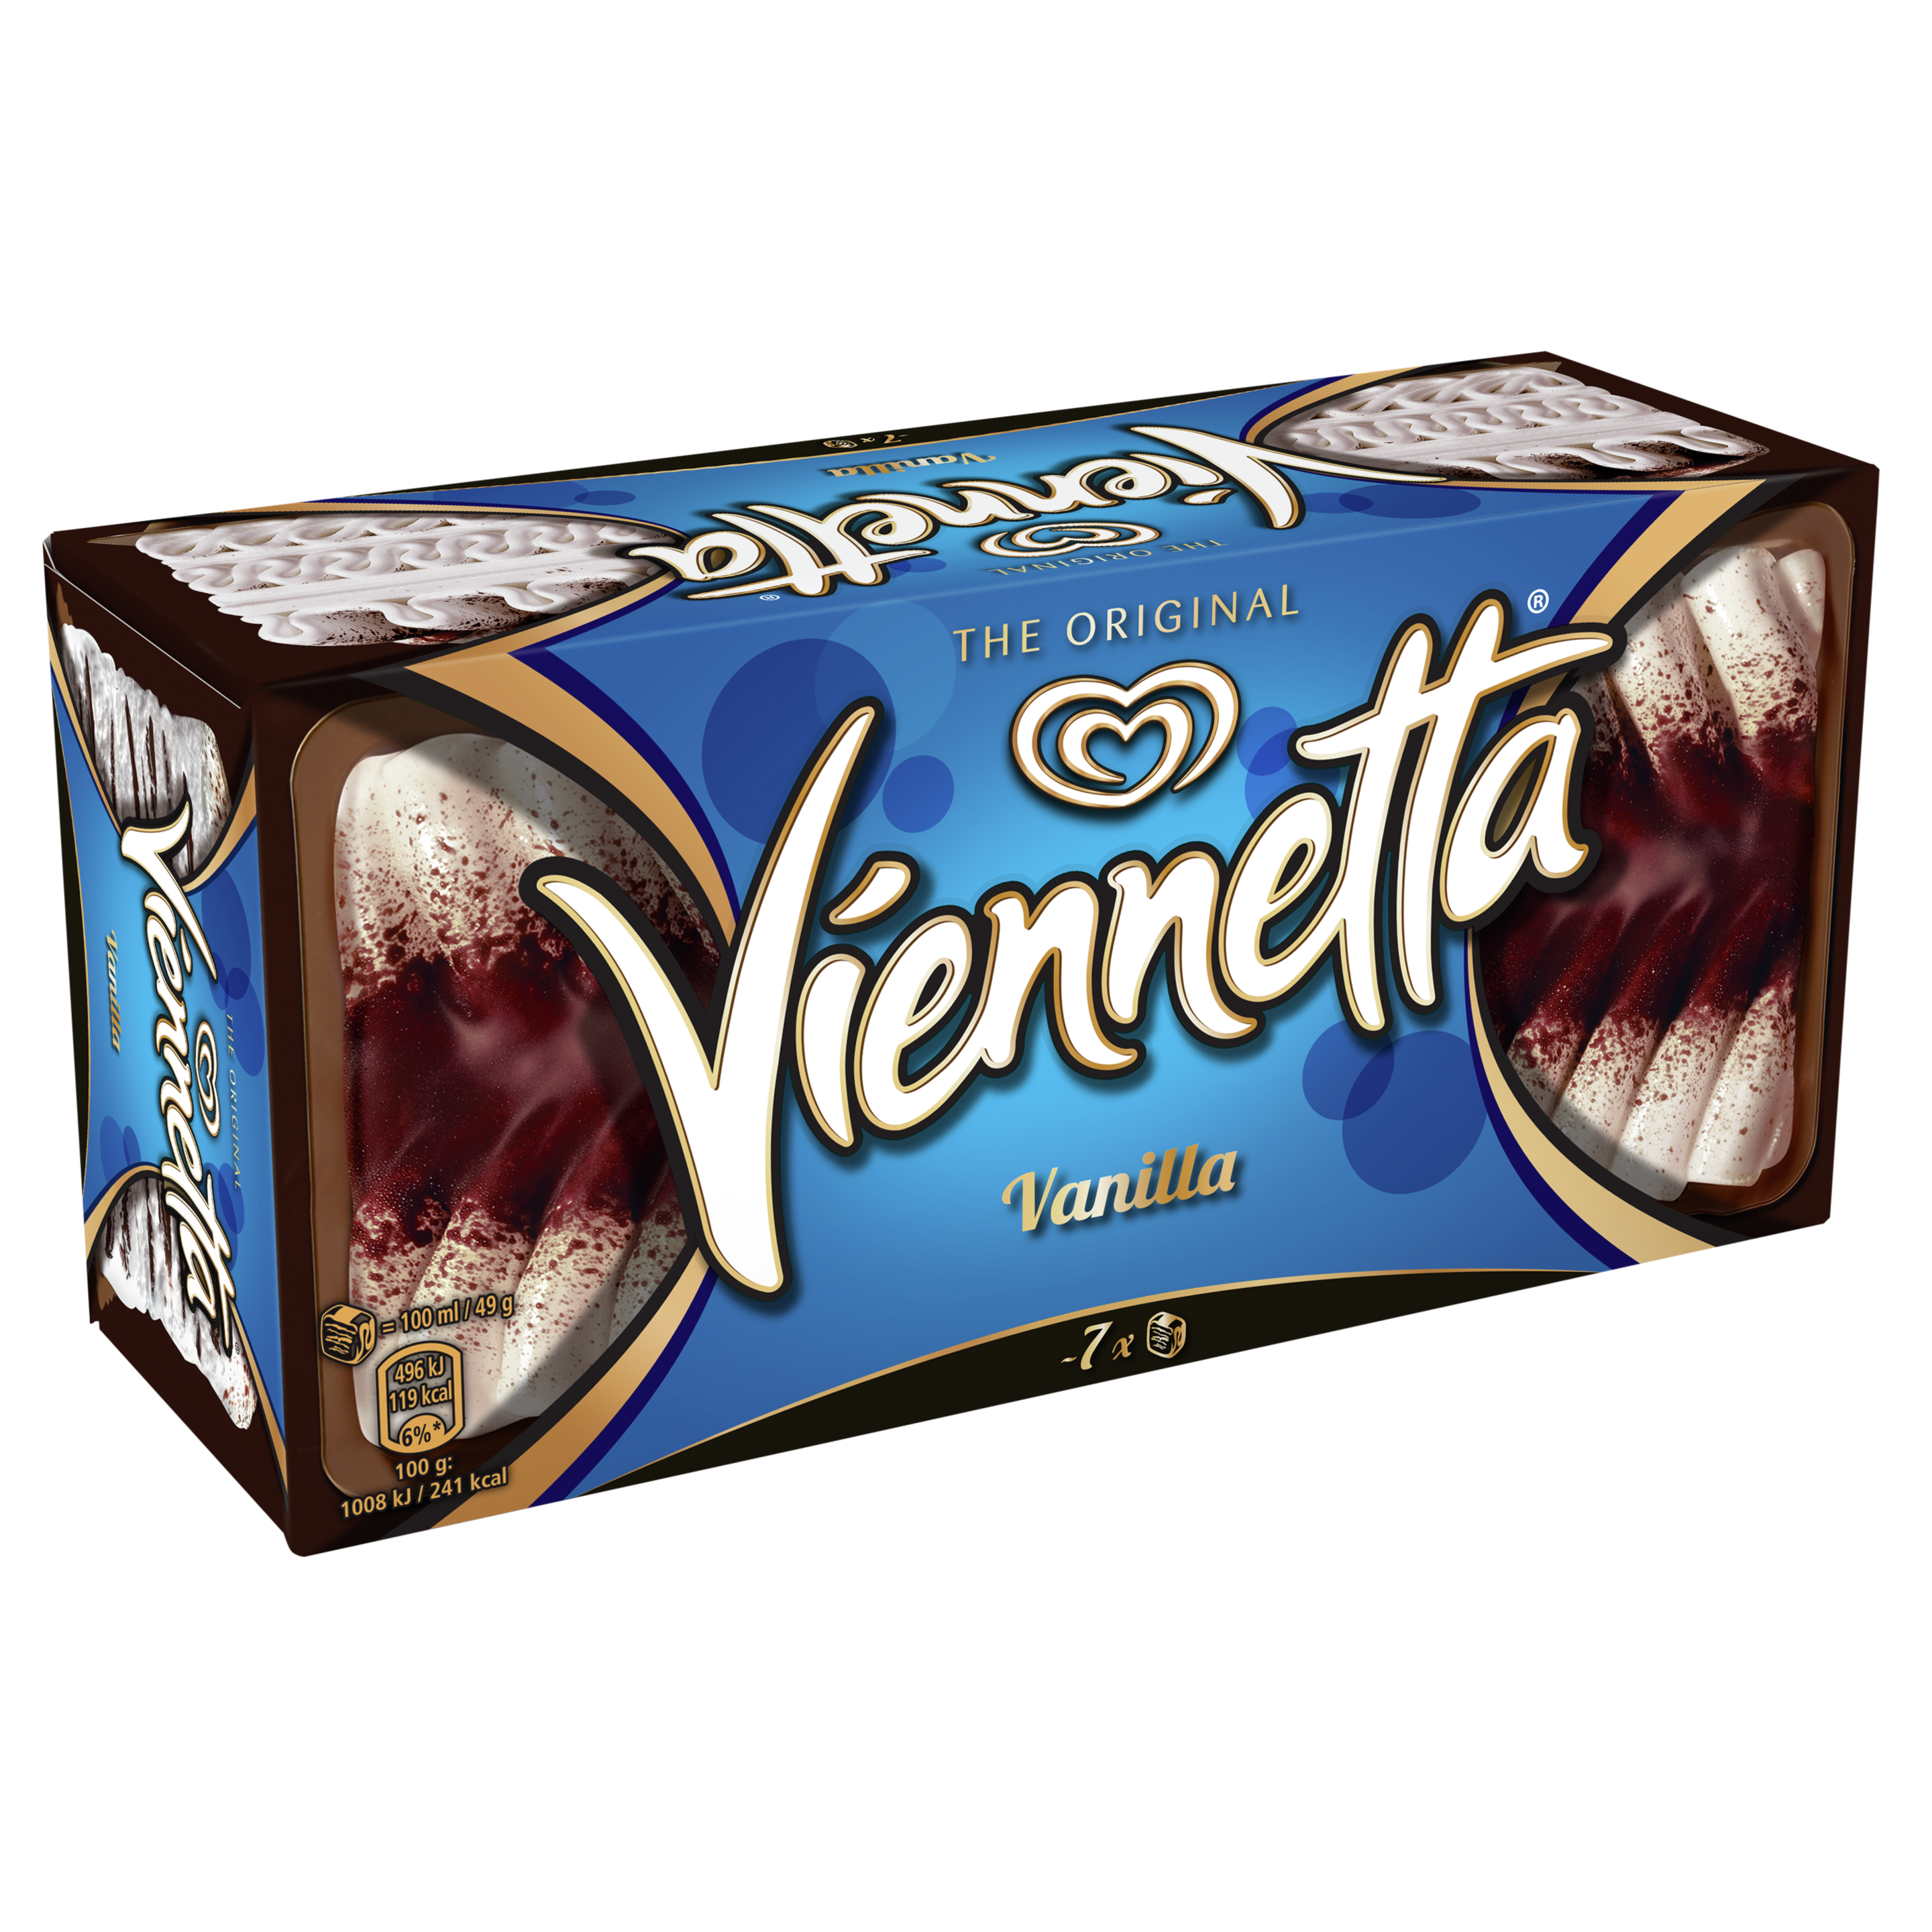 Viennetta pack